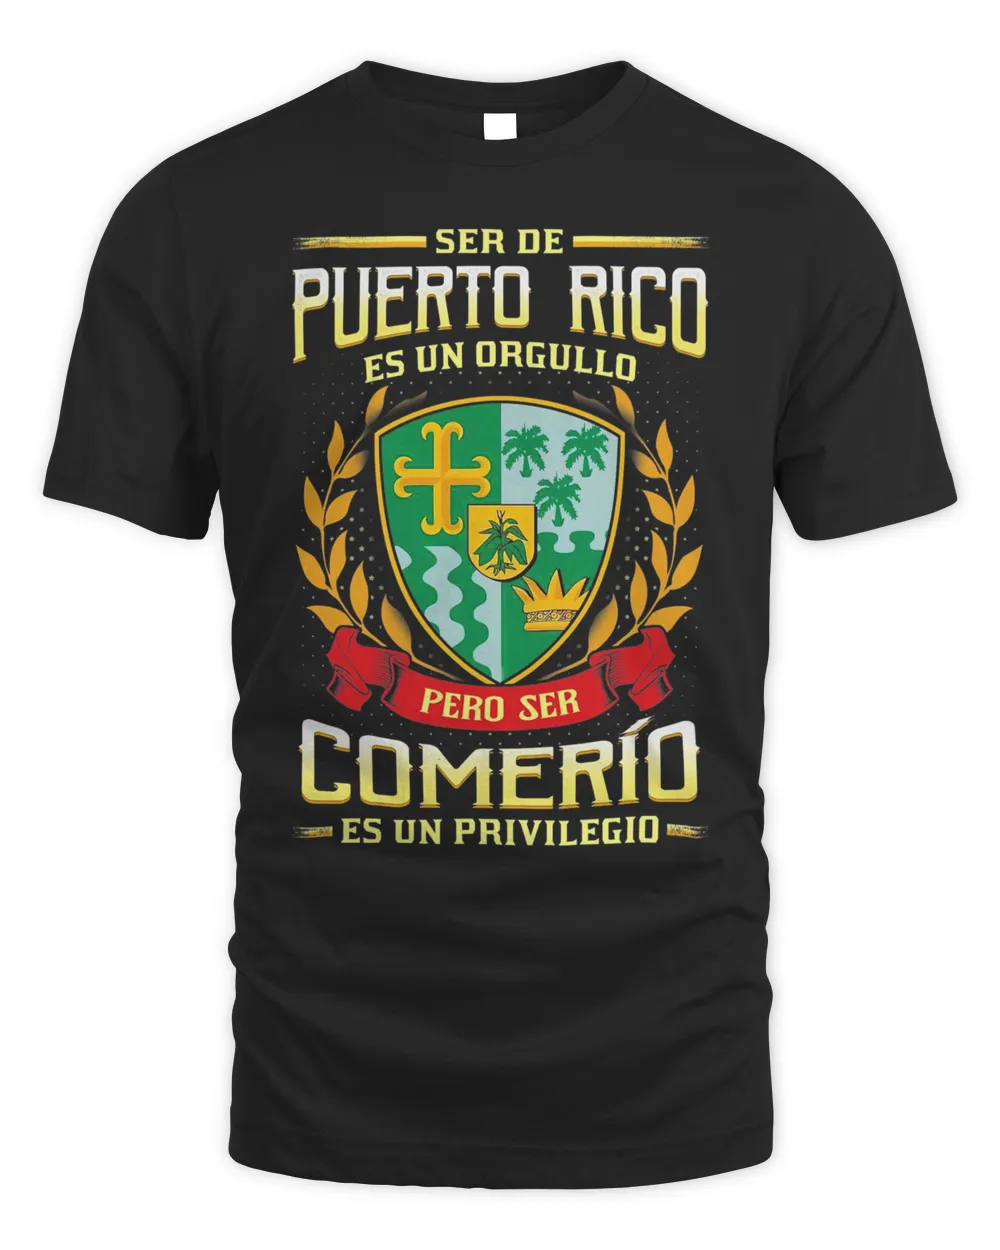 Ser De Puerto Rico Es Un Orgullo Pero Ser Comerío Es Un Privilegio Shirt